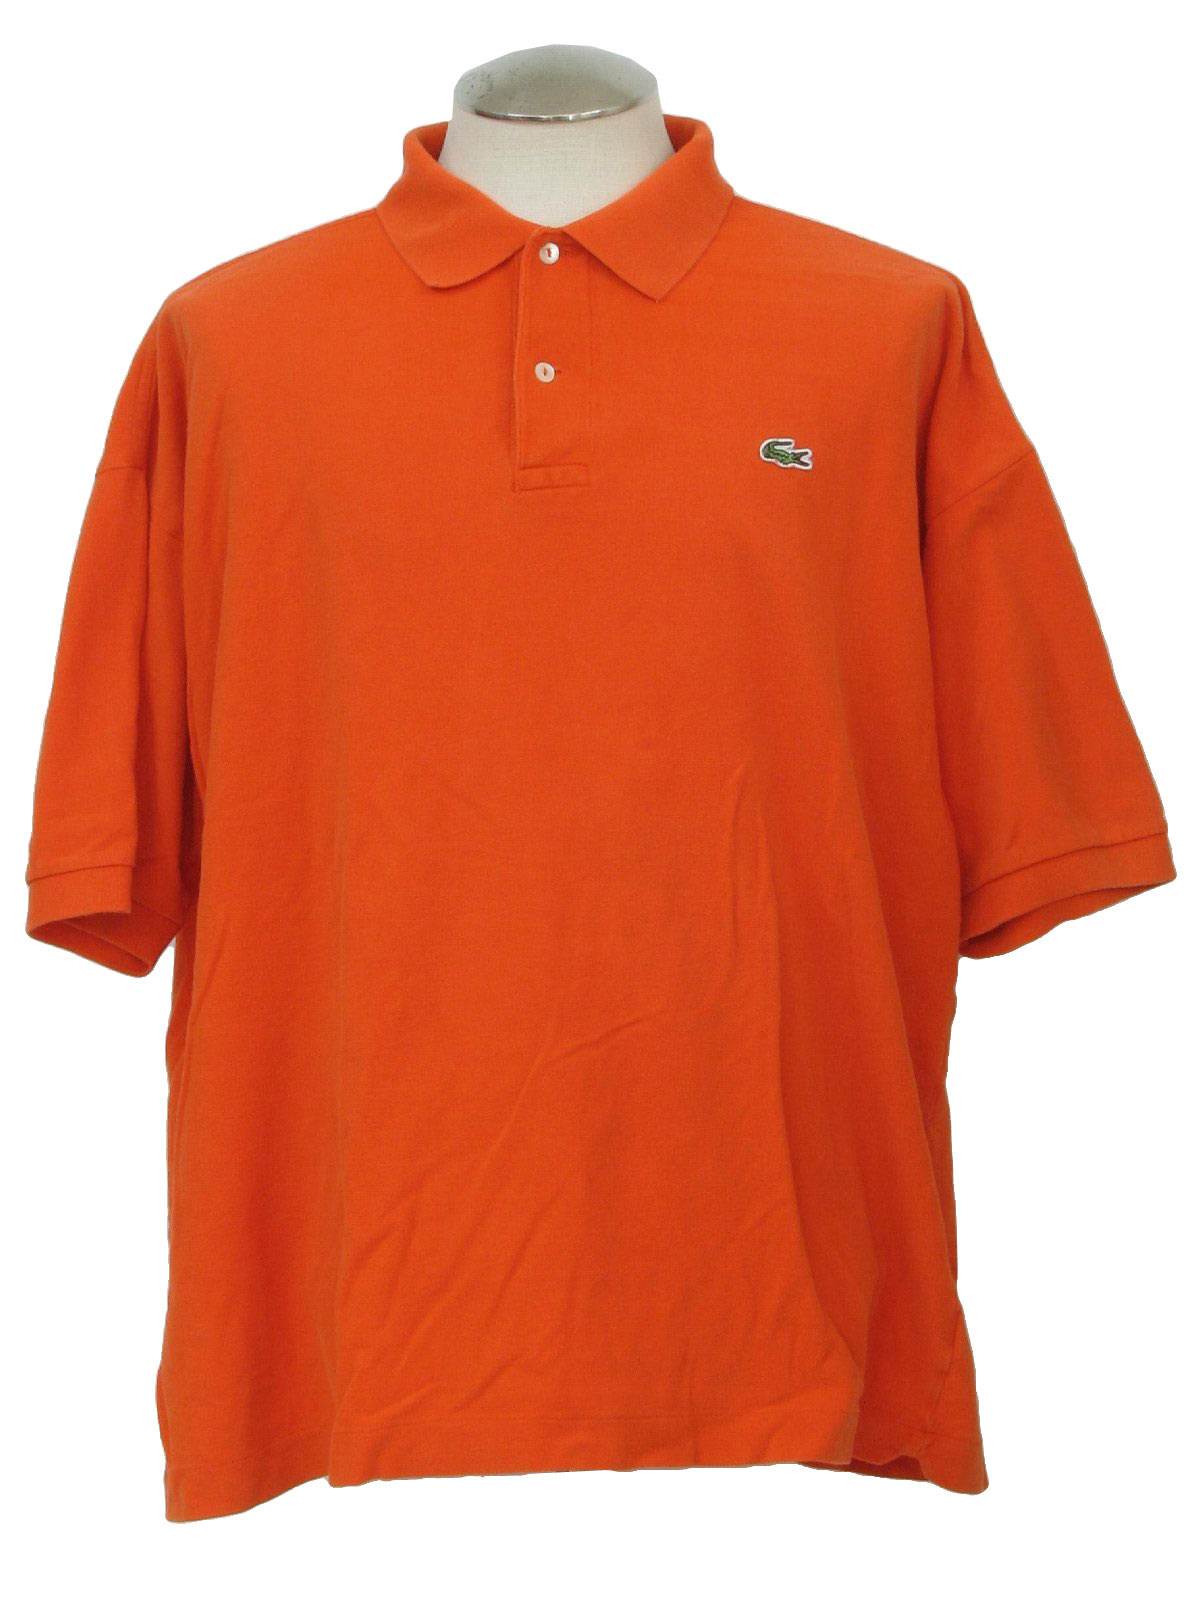 1980s Vintage Shirt: 80s -Lacoste- Mens pumpkin orange woven cotton ...